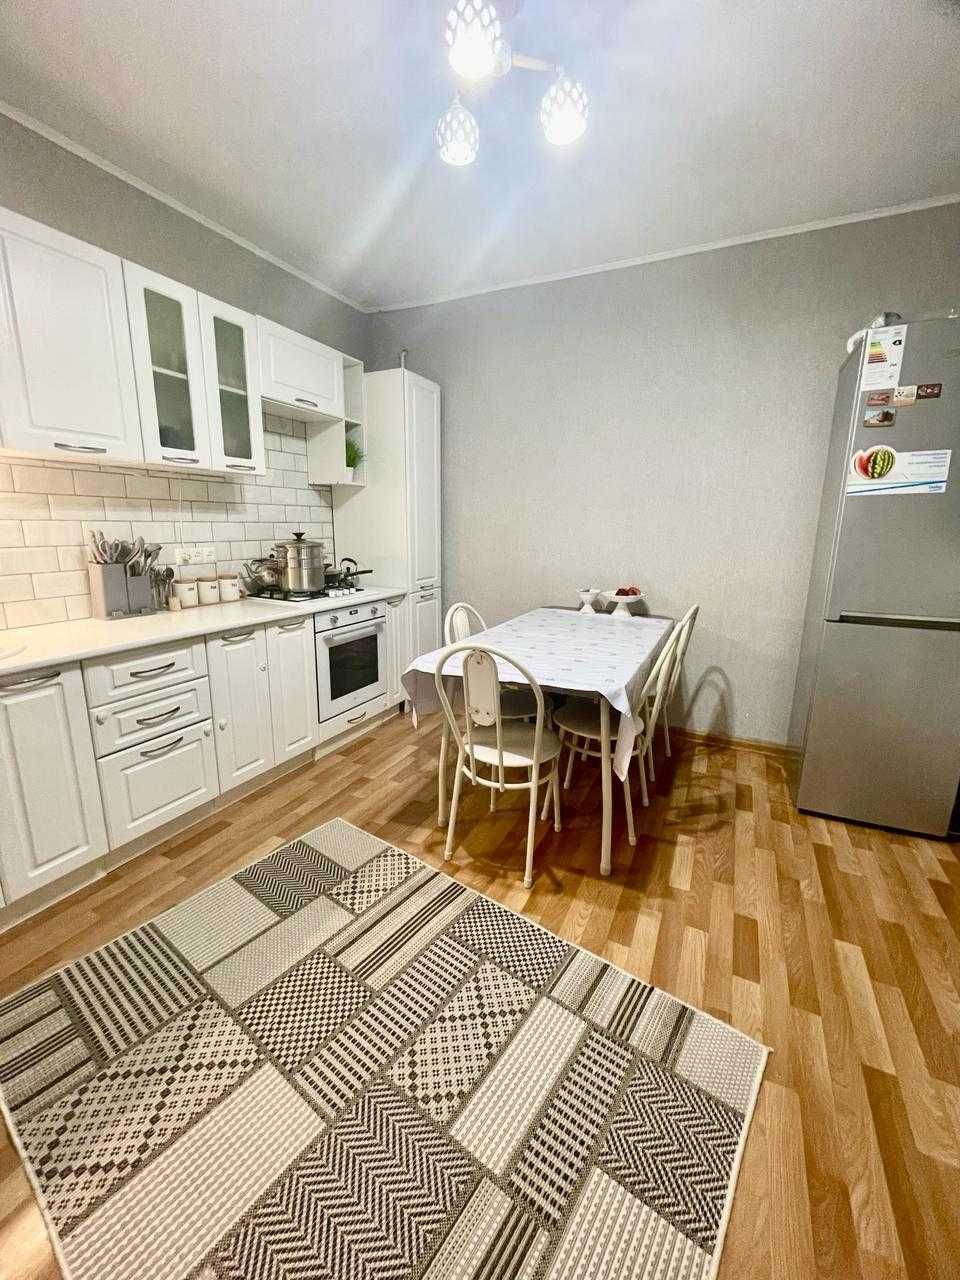 Продаётся частный дом в районе с/т "Локомотив" вблизи Шолохова